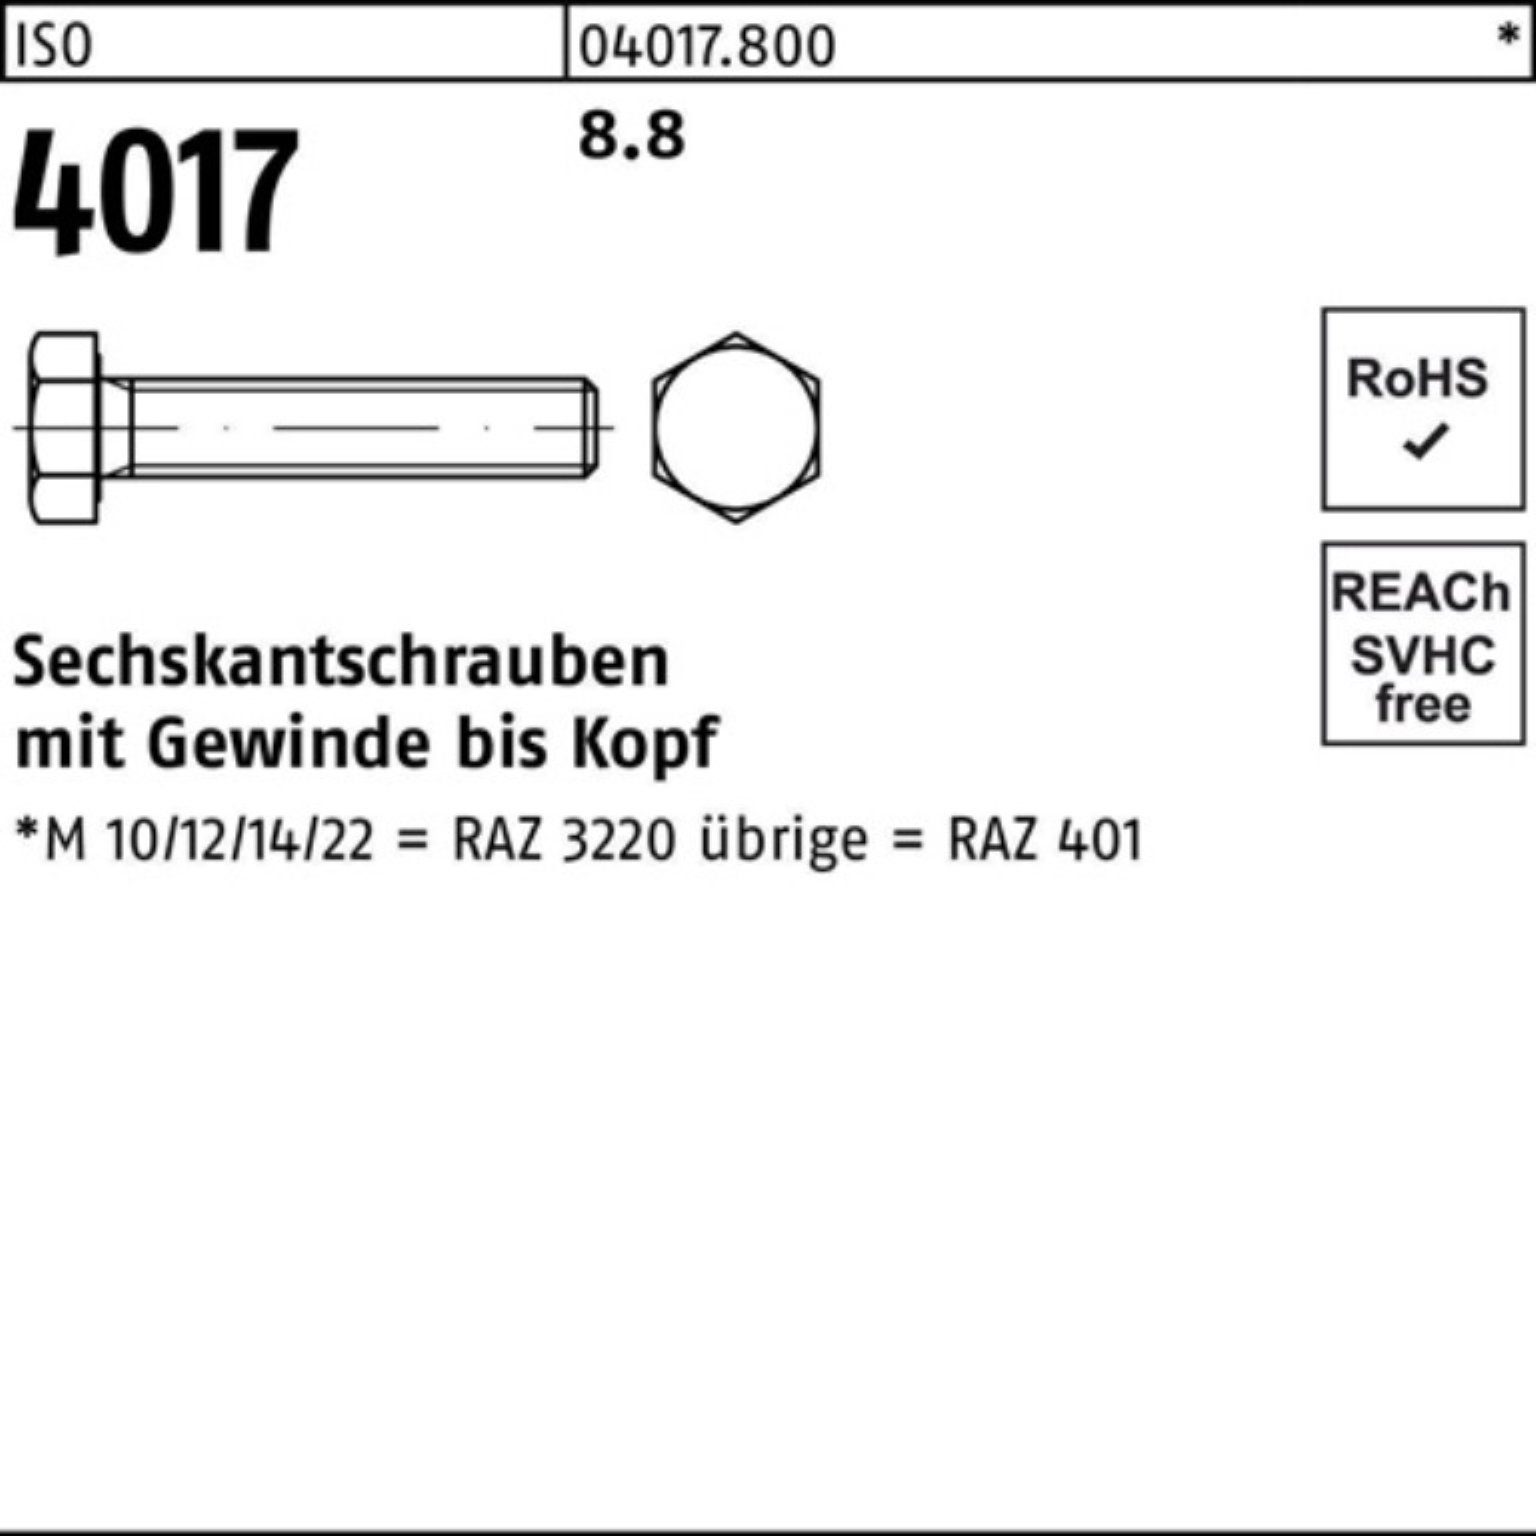 Bufab Sechskantschraube 100er Pack Sechskantschraube 4017 Stück 8.8 VG M10x 40 50 170 ISO ISO